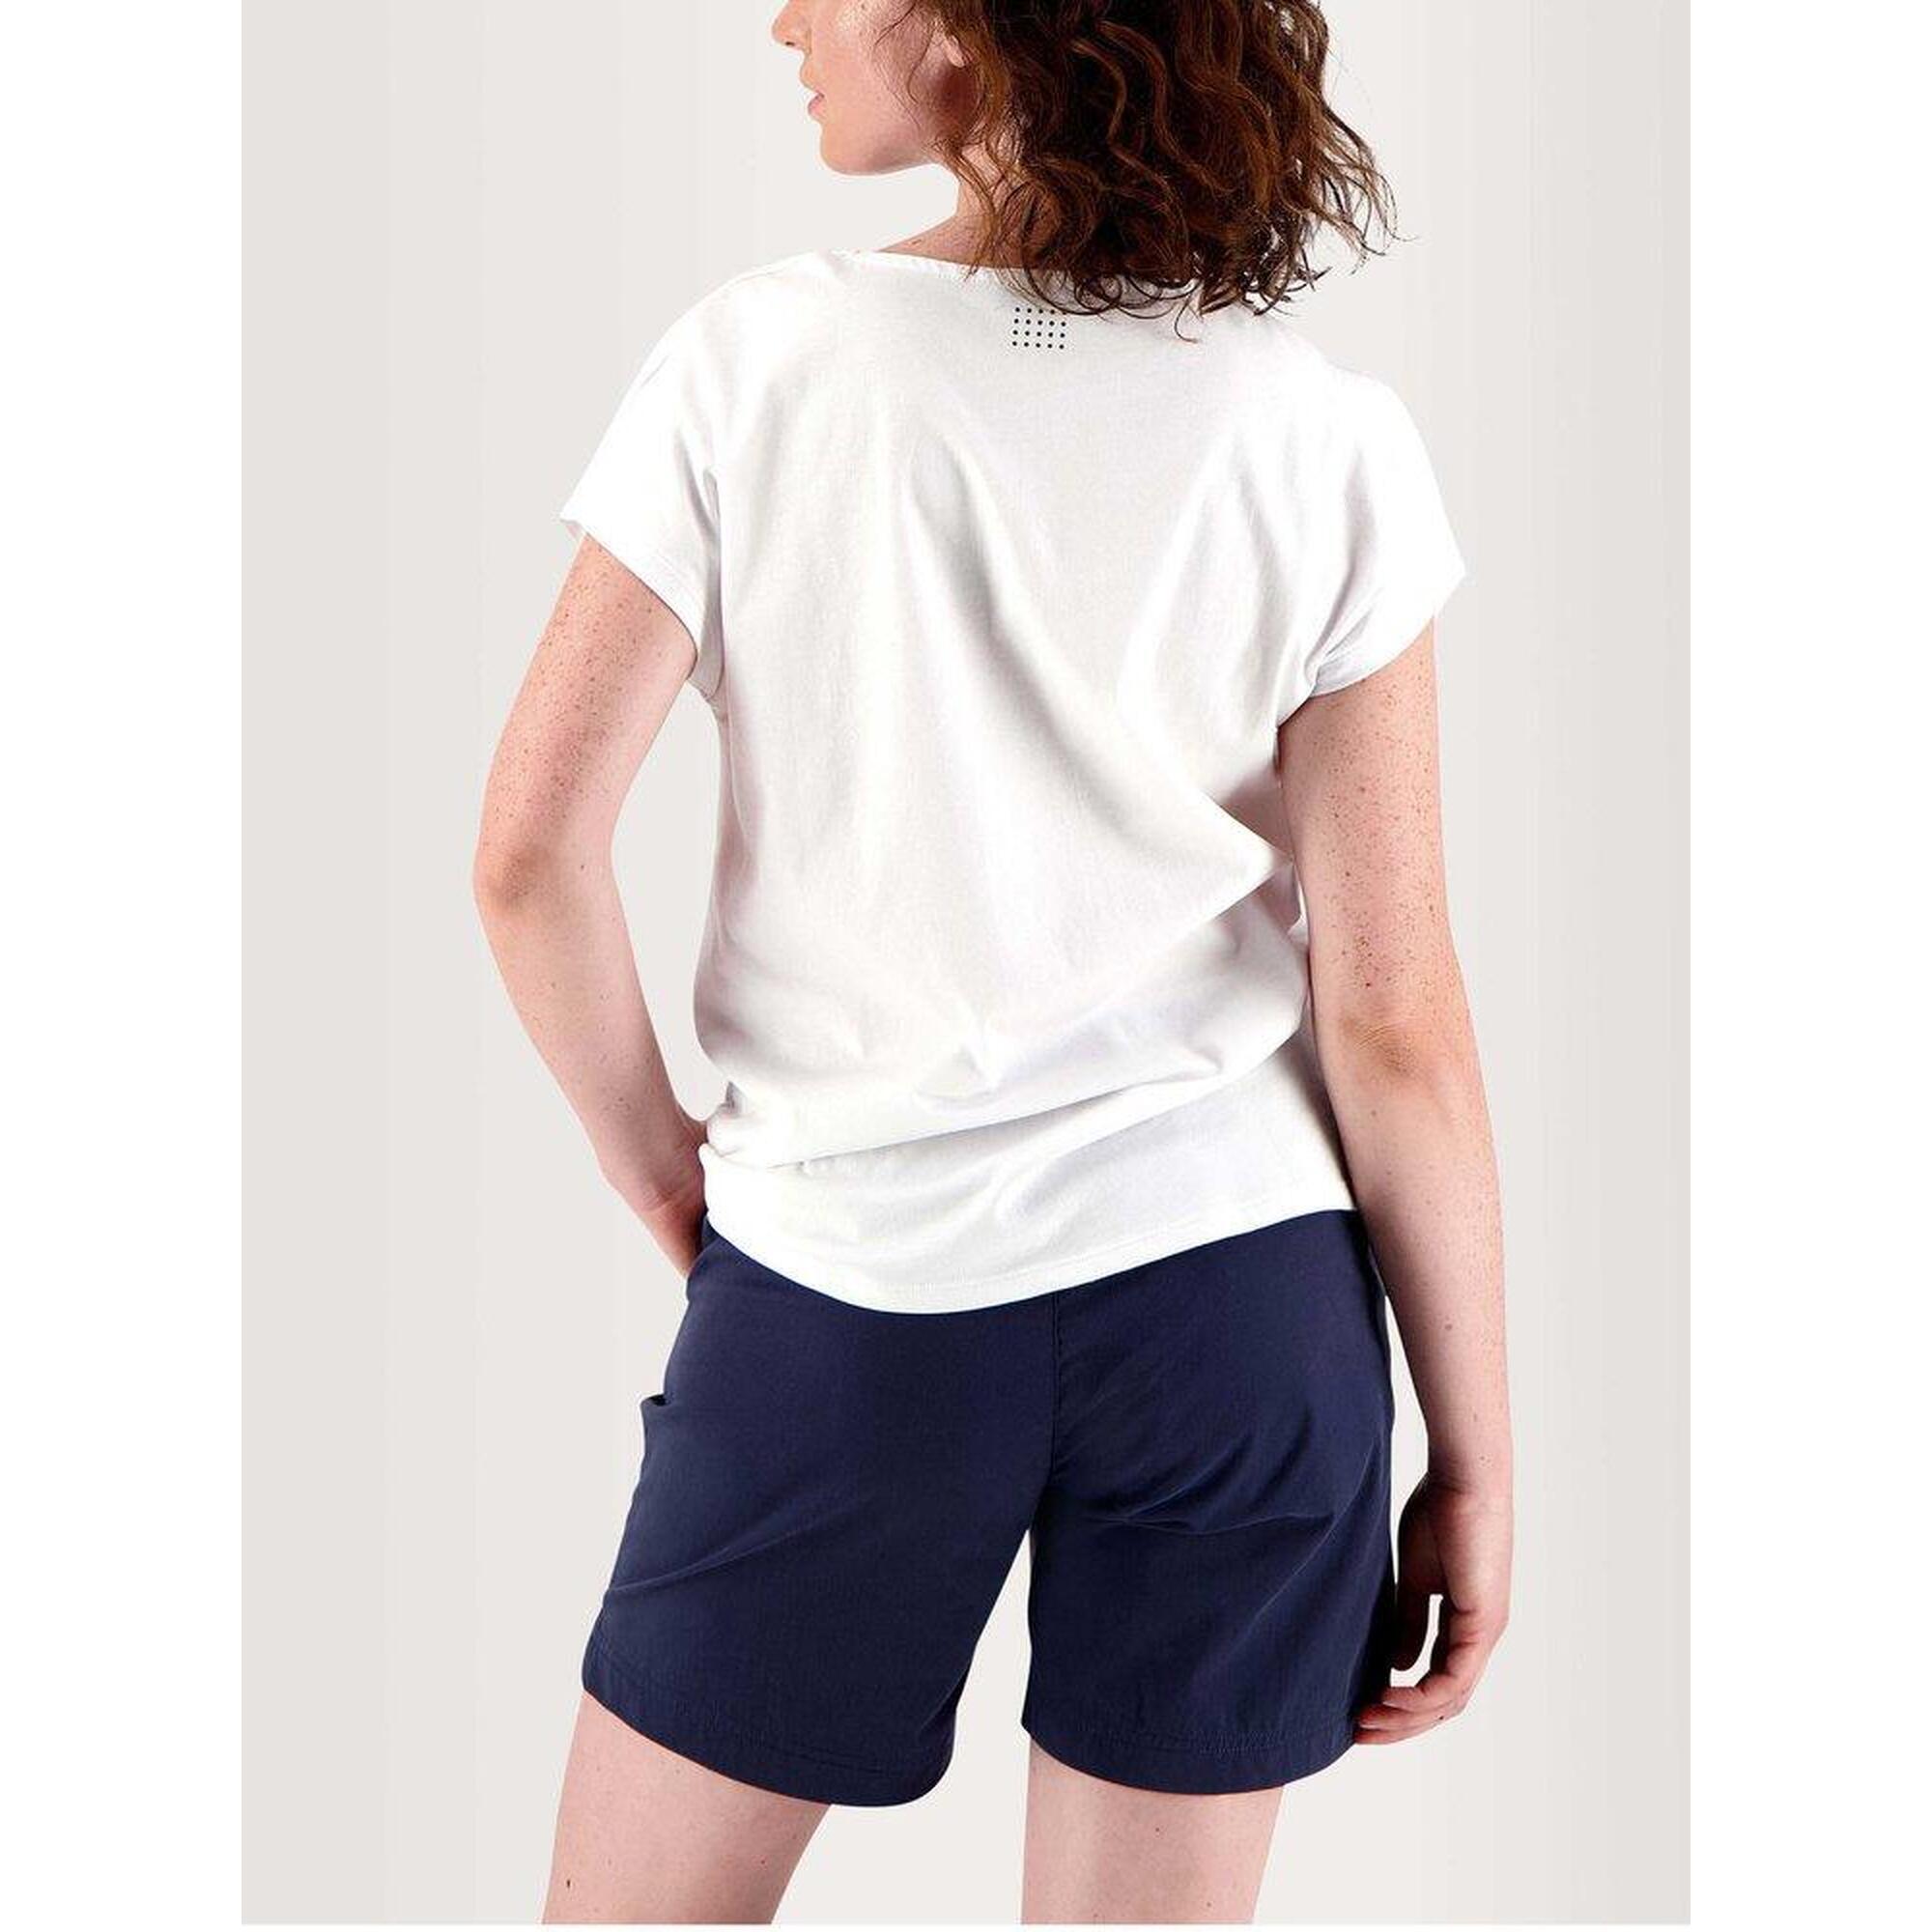 T-shirt manches courtes Femme - PAIGESAN Blanc